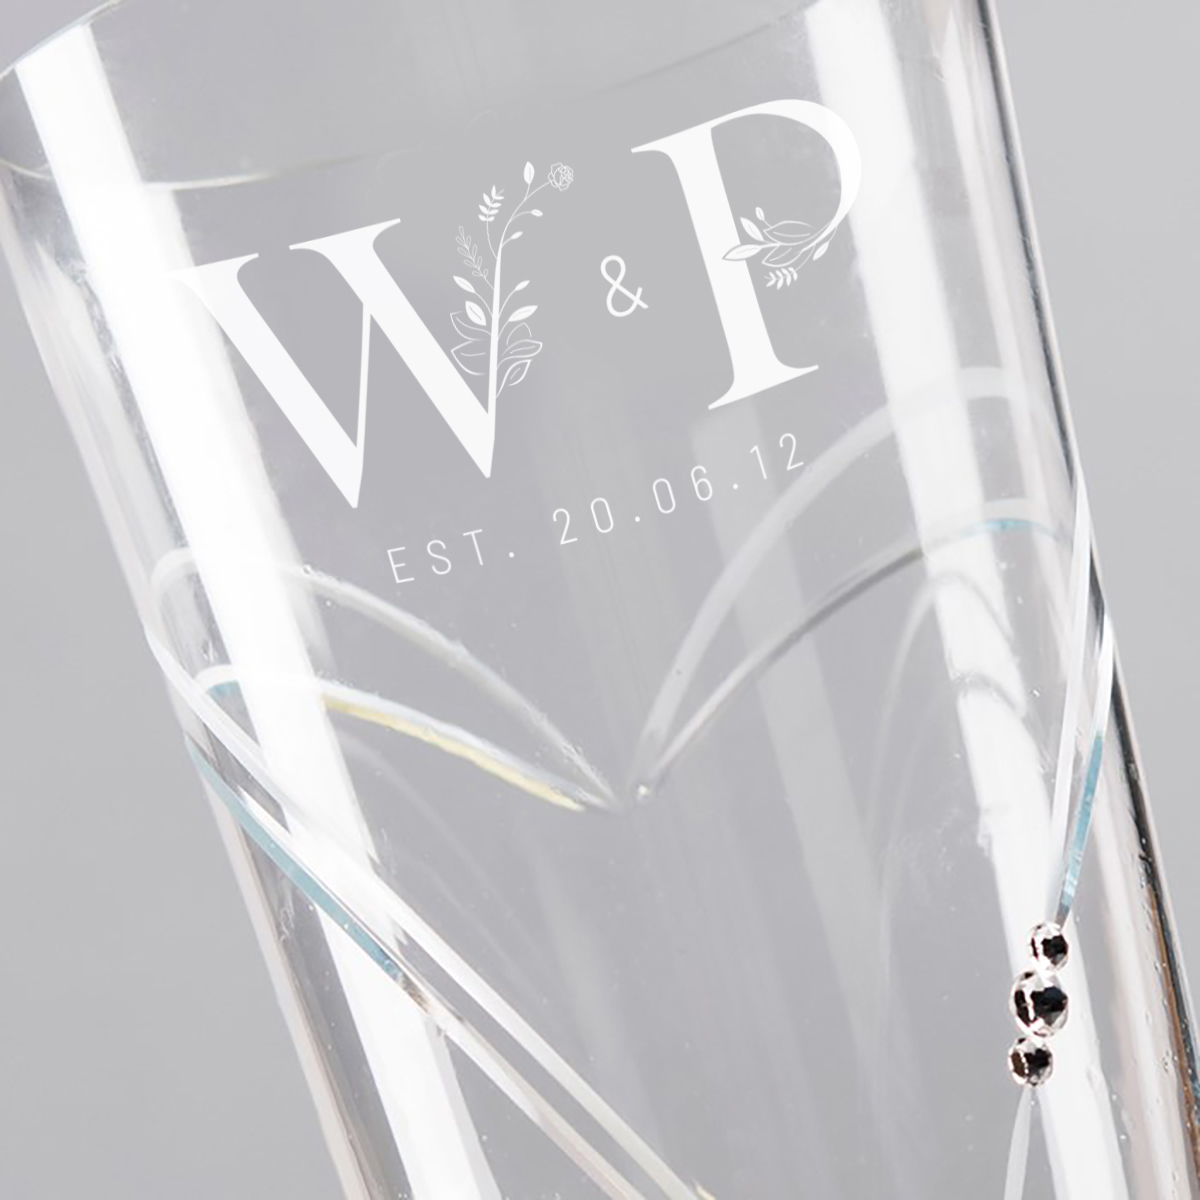 Engraved Swarovski Elements Glass Vase - Floral Initials